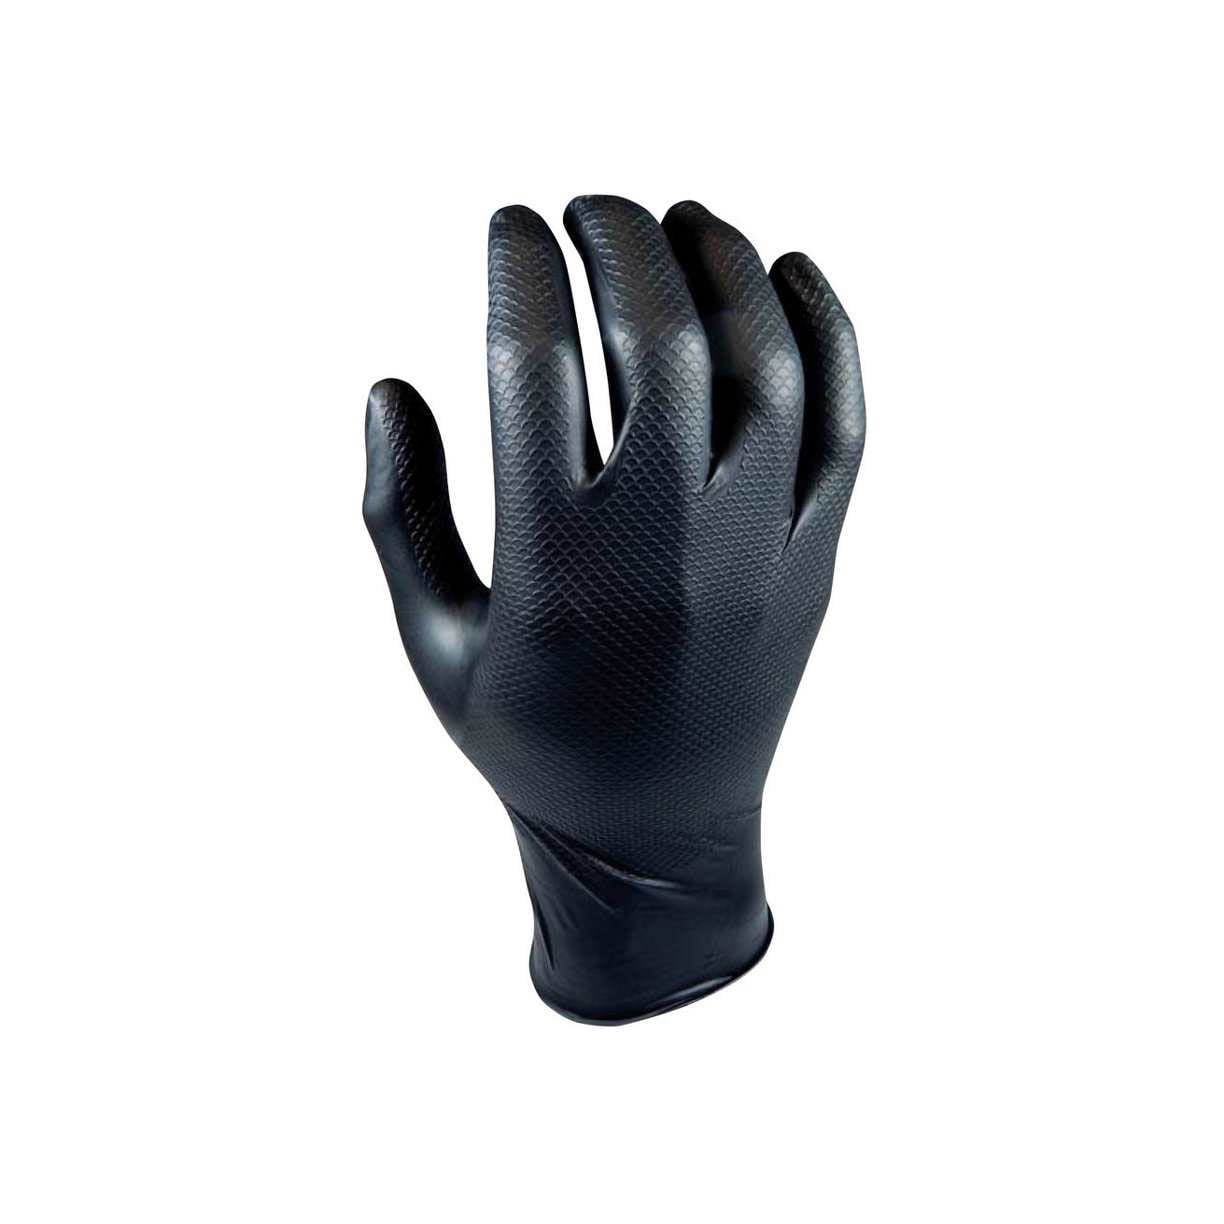 PROTECH crne nitrilne rukavice Profi Griff pakovanje 50 kom -  masineialati.ba - Profesionalni i hobi alati i mašine